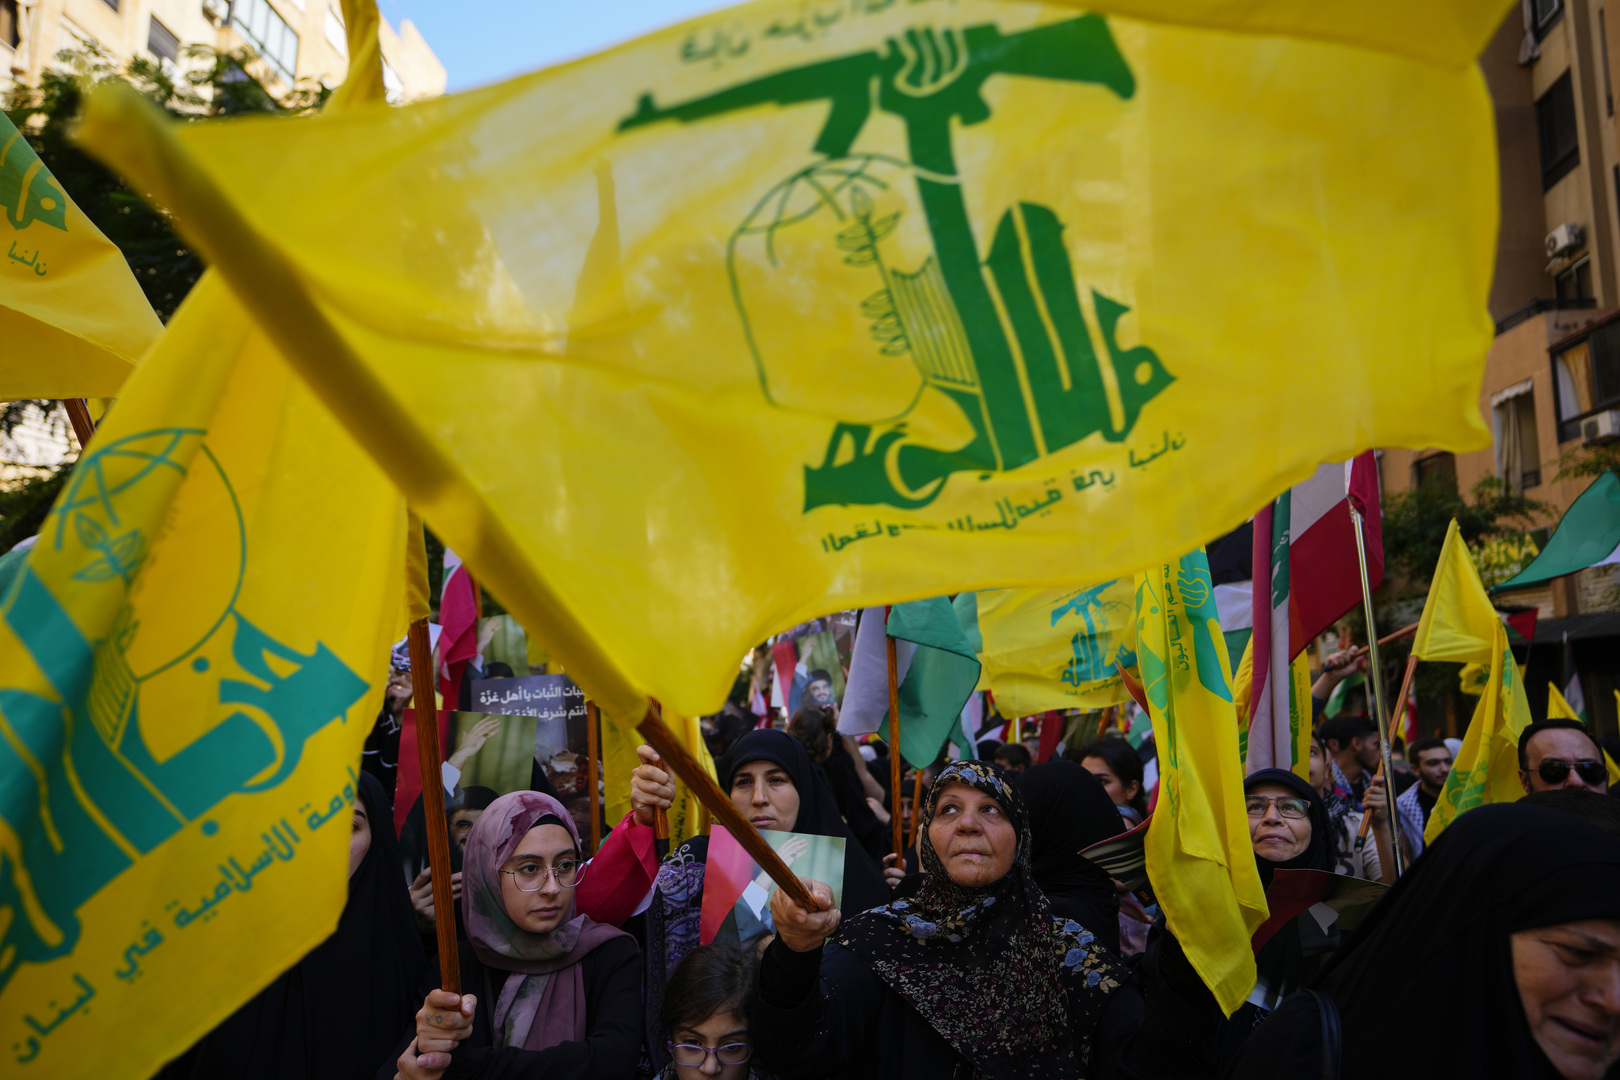 ماكرون: اتصلنا بـ "حزب الله" لتجنب التصعيد على حدود لبنان